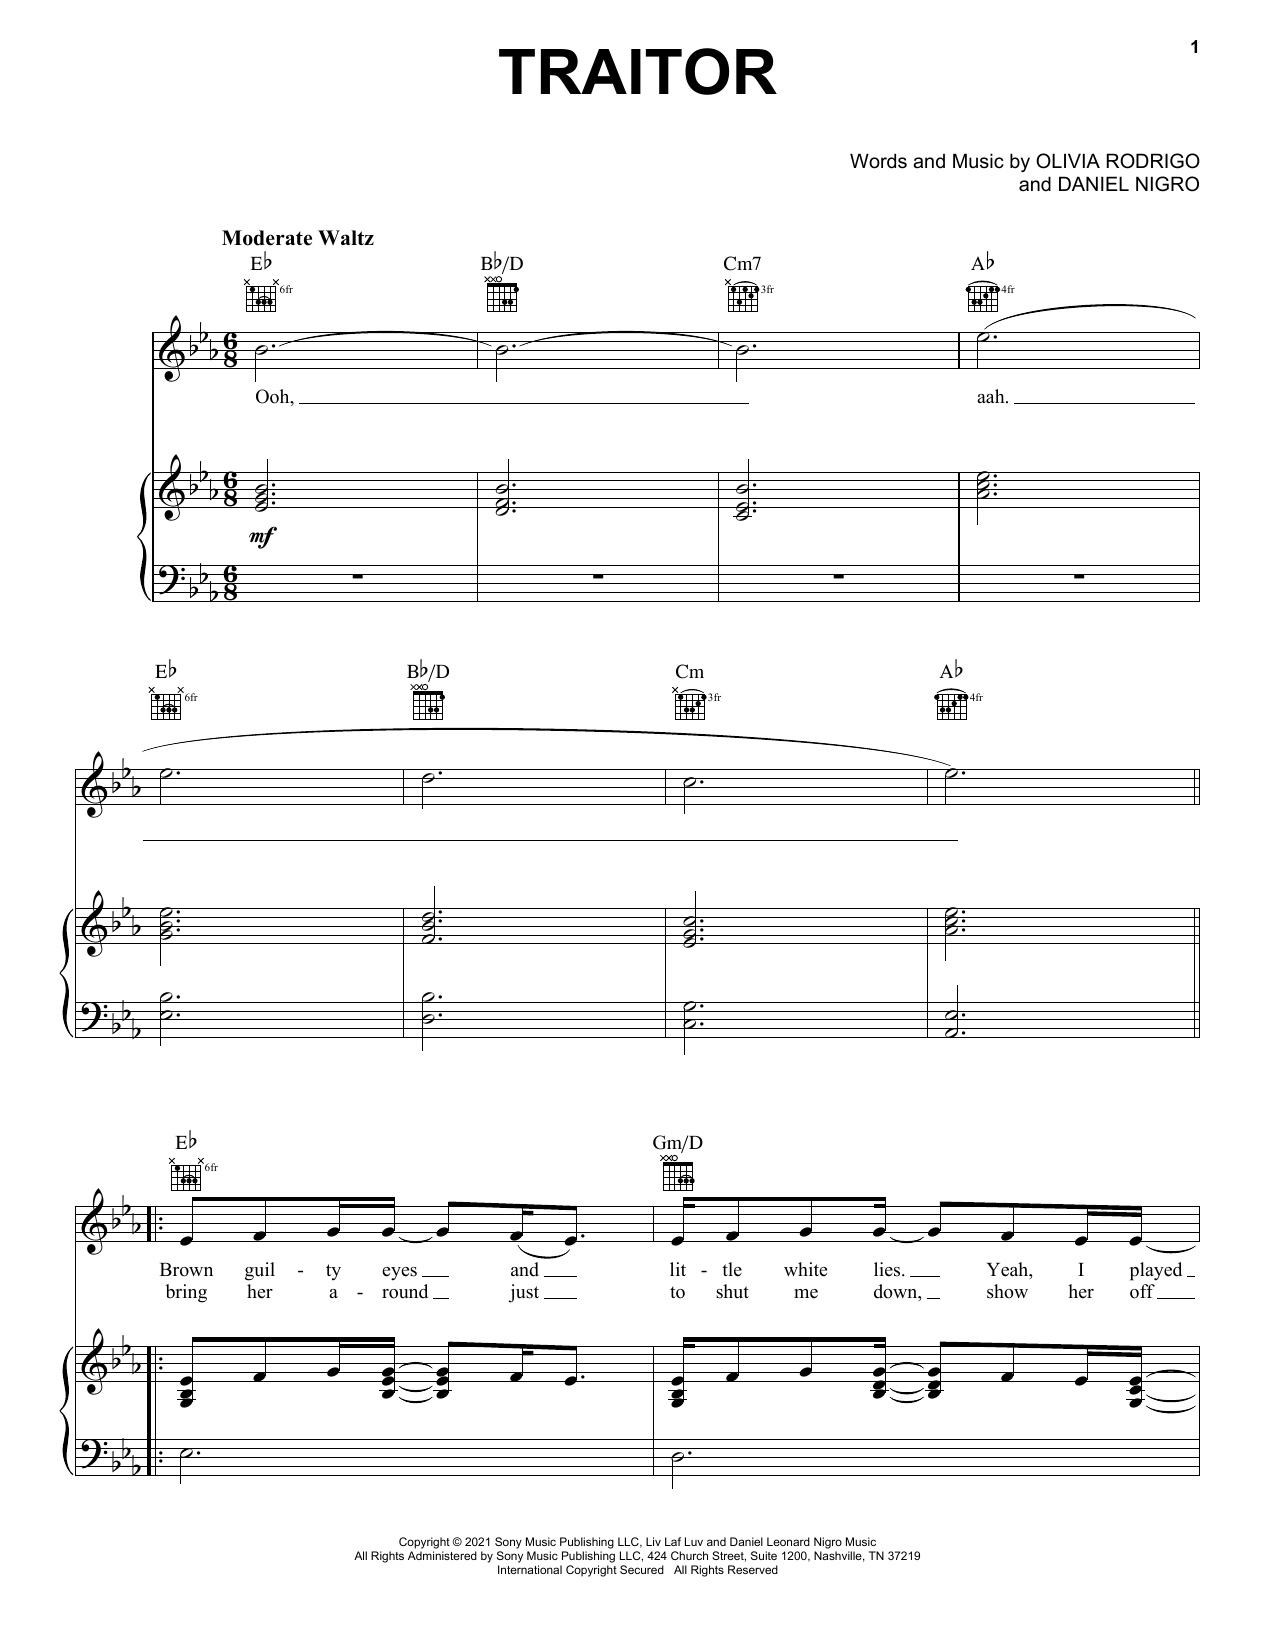 Olivia Rodrigo traitor Sheet Music Notes & Chords for Ukulele - Download or Print PDF